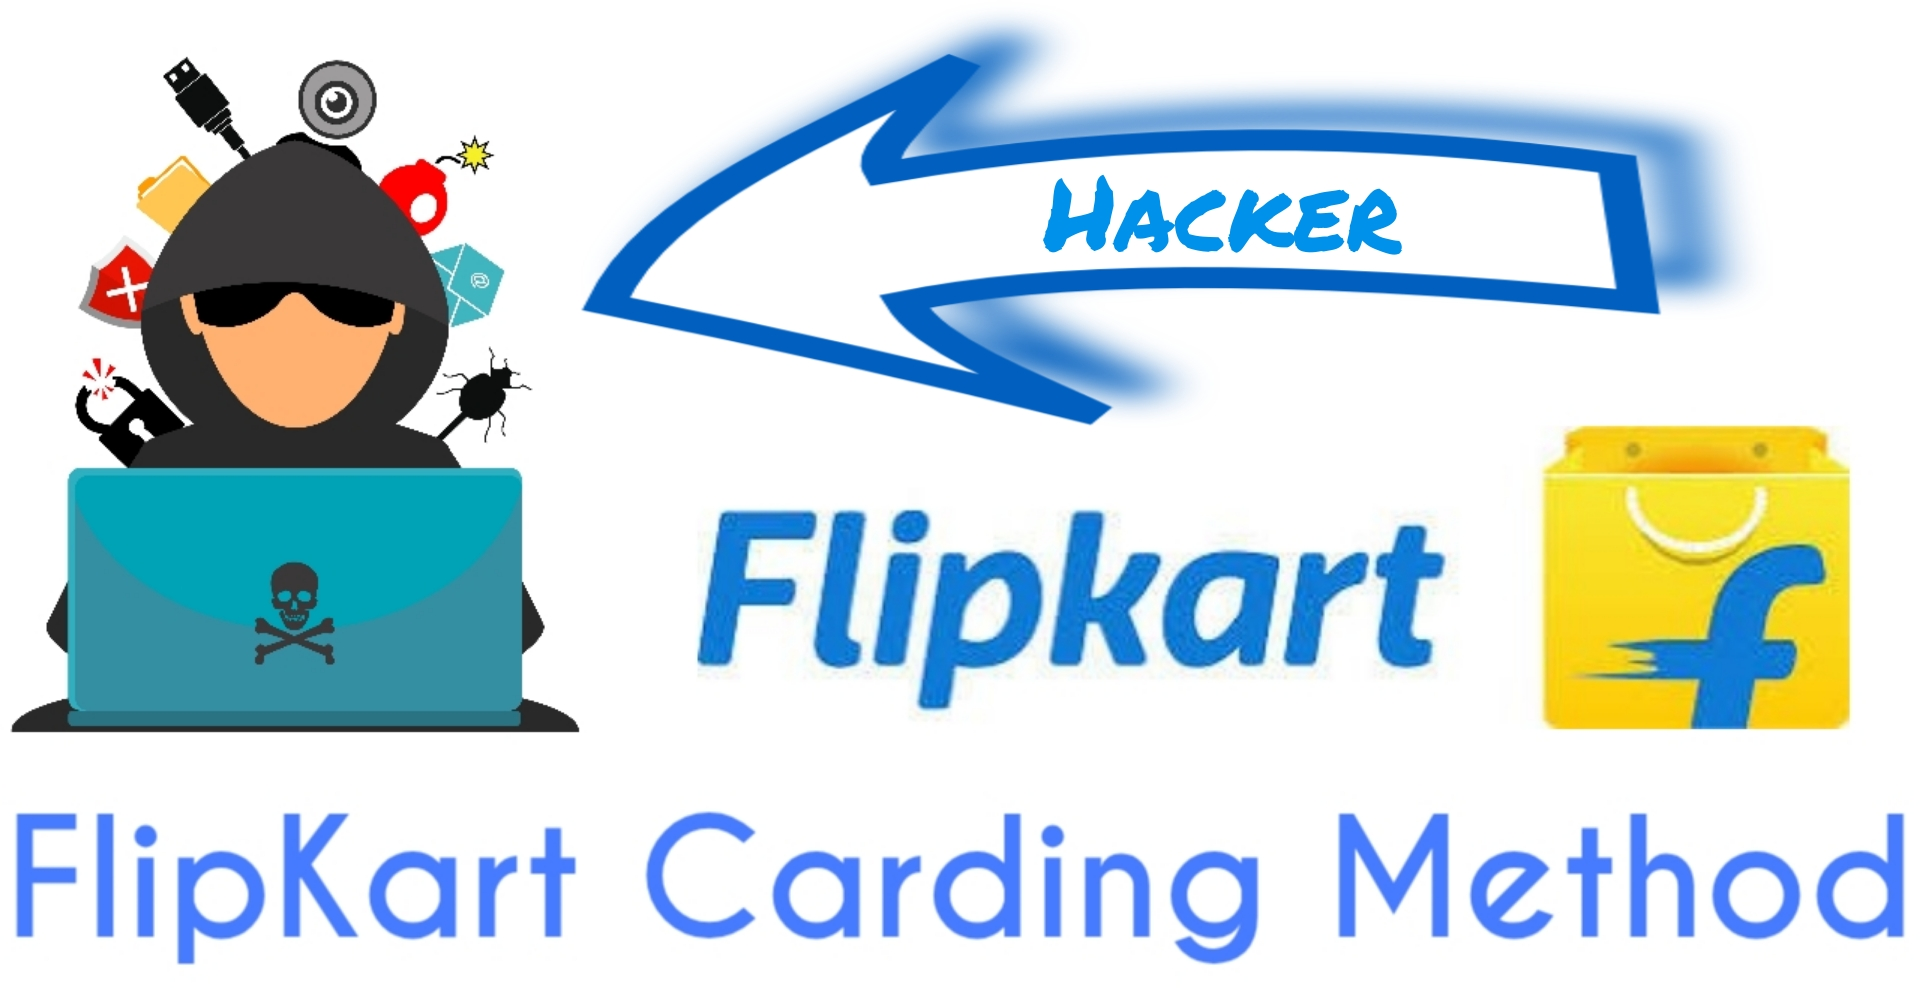 Flipkart Carding Method Trick